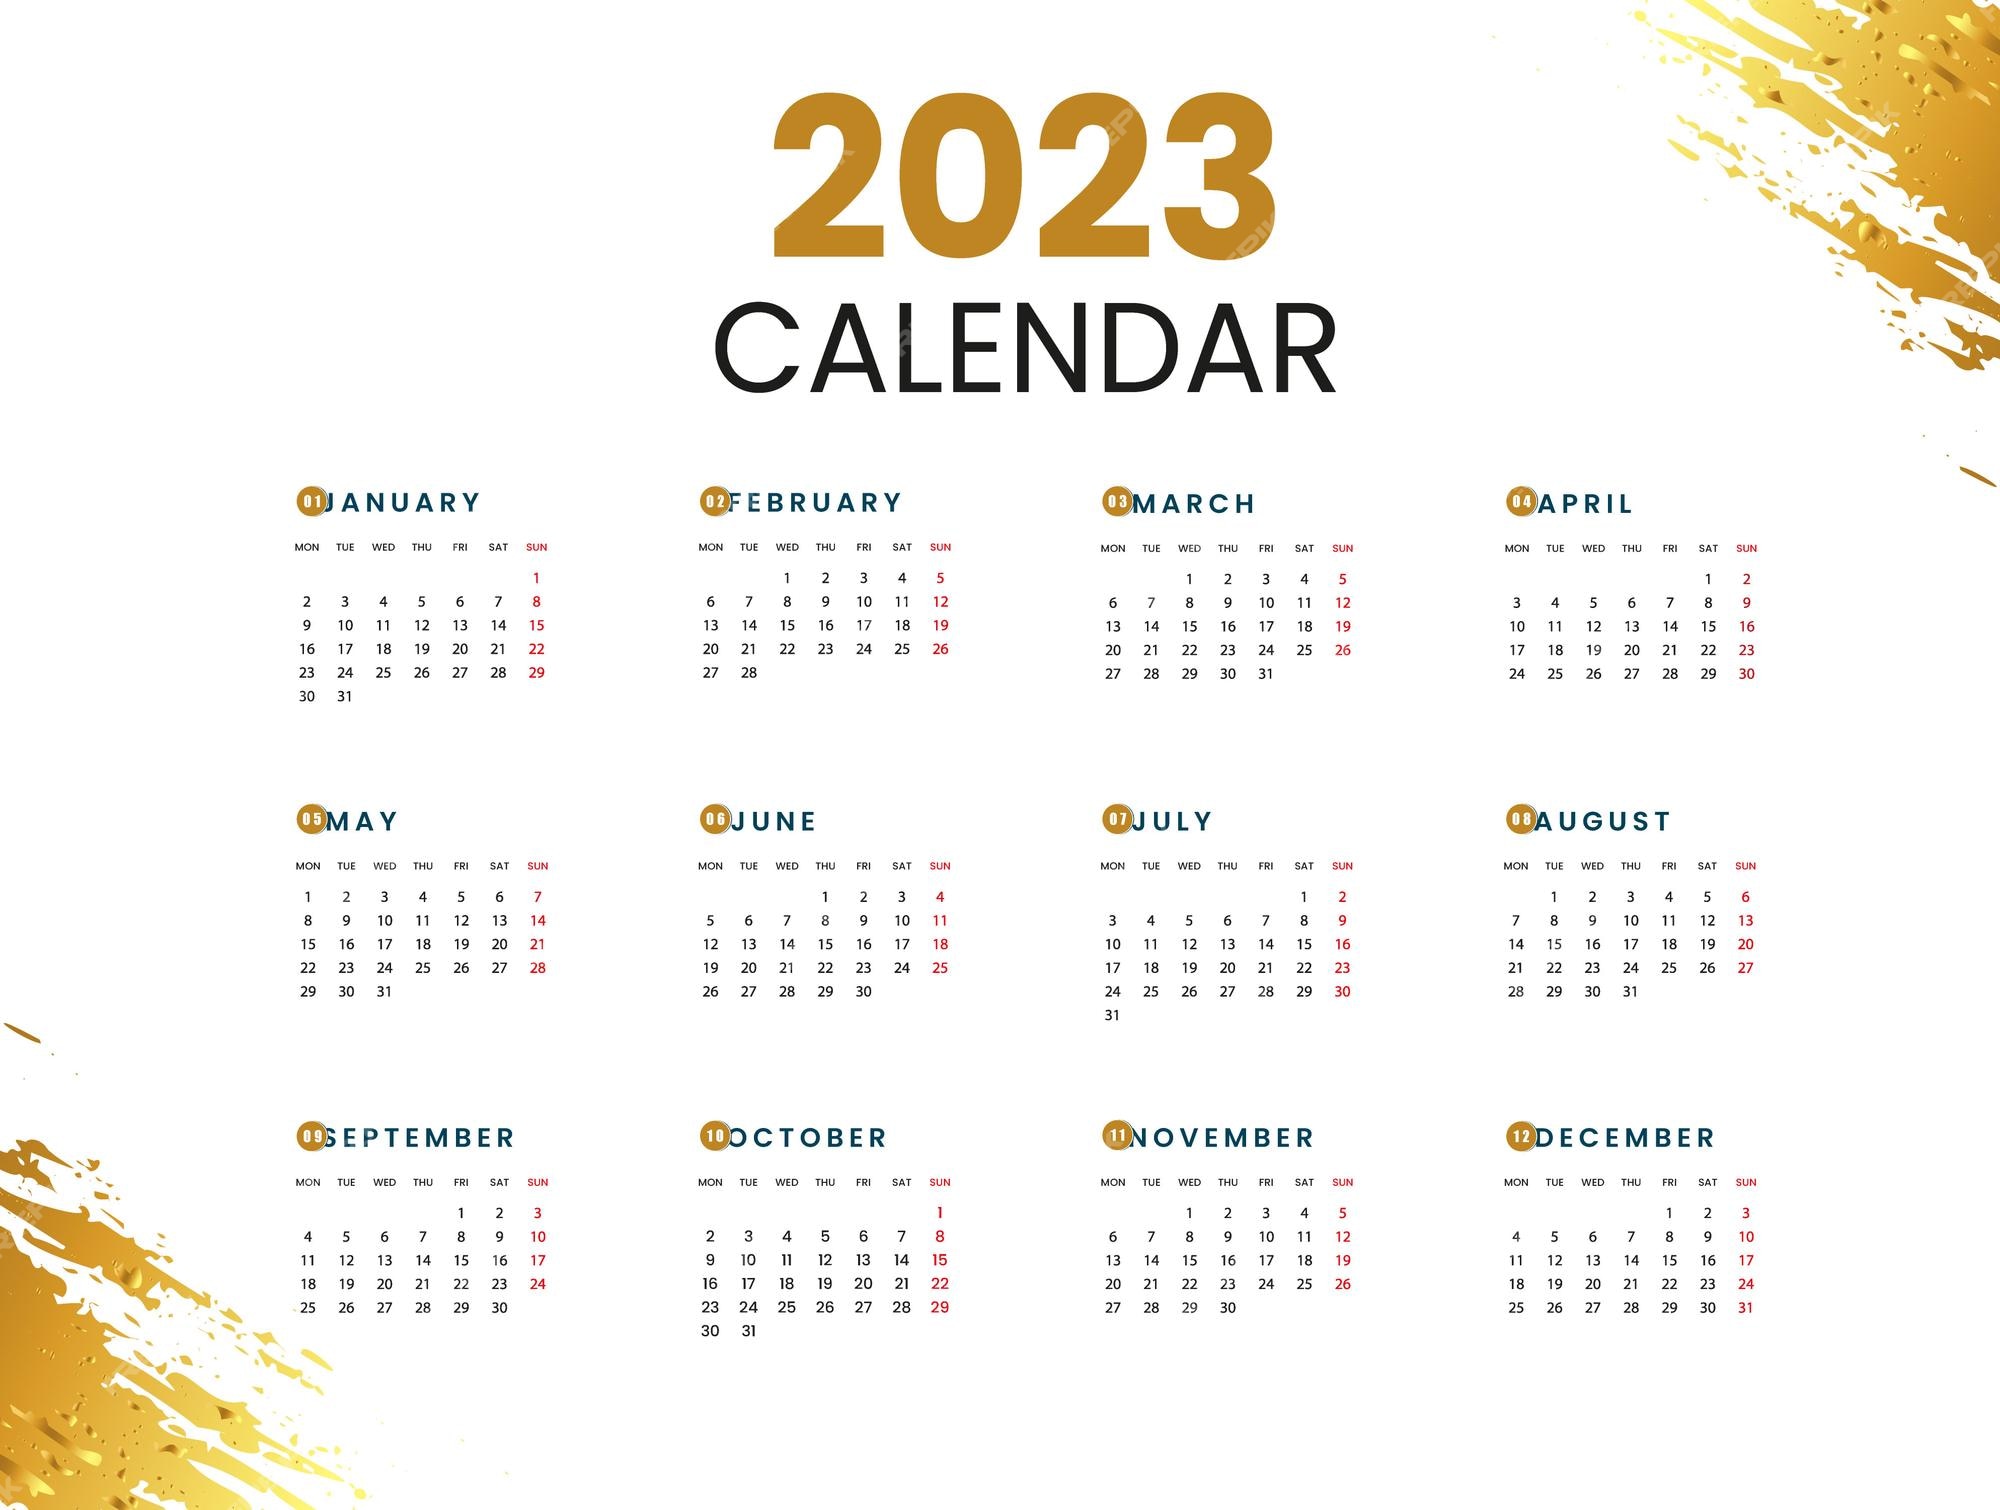 Lịch năm mới 2024: Năm mới đến rồi, bạn đã sẵn sàng bắt đầu một thế giới mới chưa? Một chiếc lịch năm mới 2024 với mẫu thiết kế độc đáo sẽ giúp bạn chuẩn bị tốt hơn cho những kế hoạch và tham vọng của mình trong năm mới. Hãy click để khám phá các mẫu lịch năm mới 2024 đa dạng và đẹp mắt.